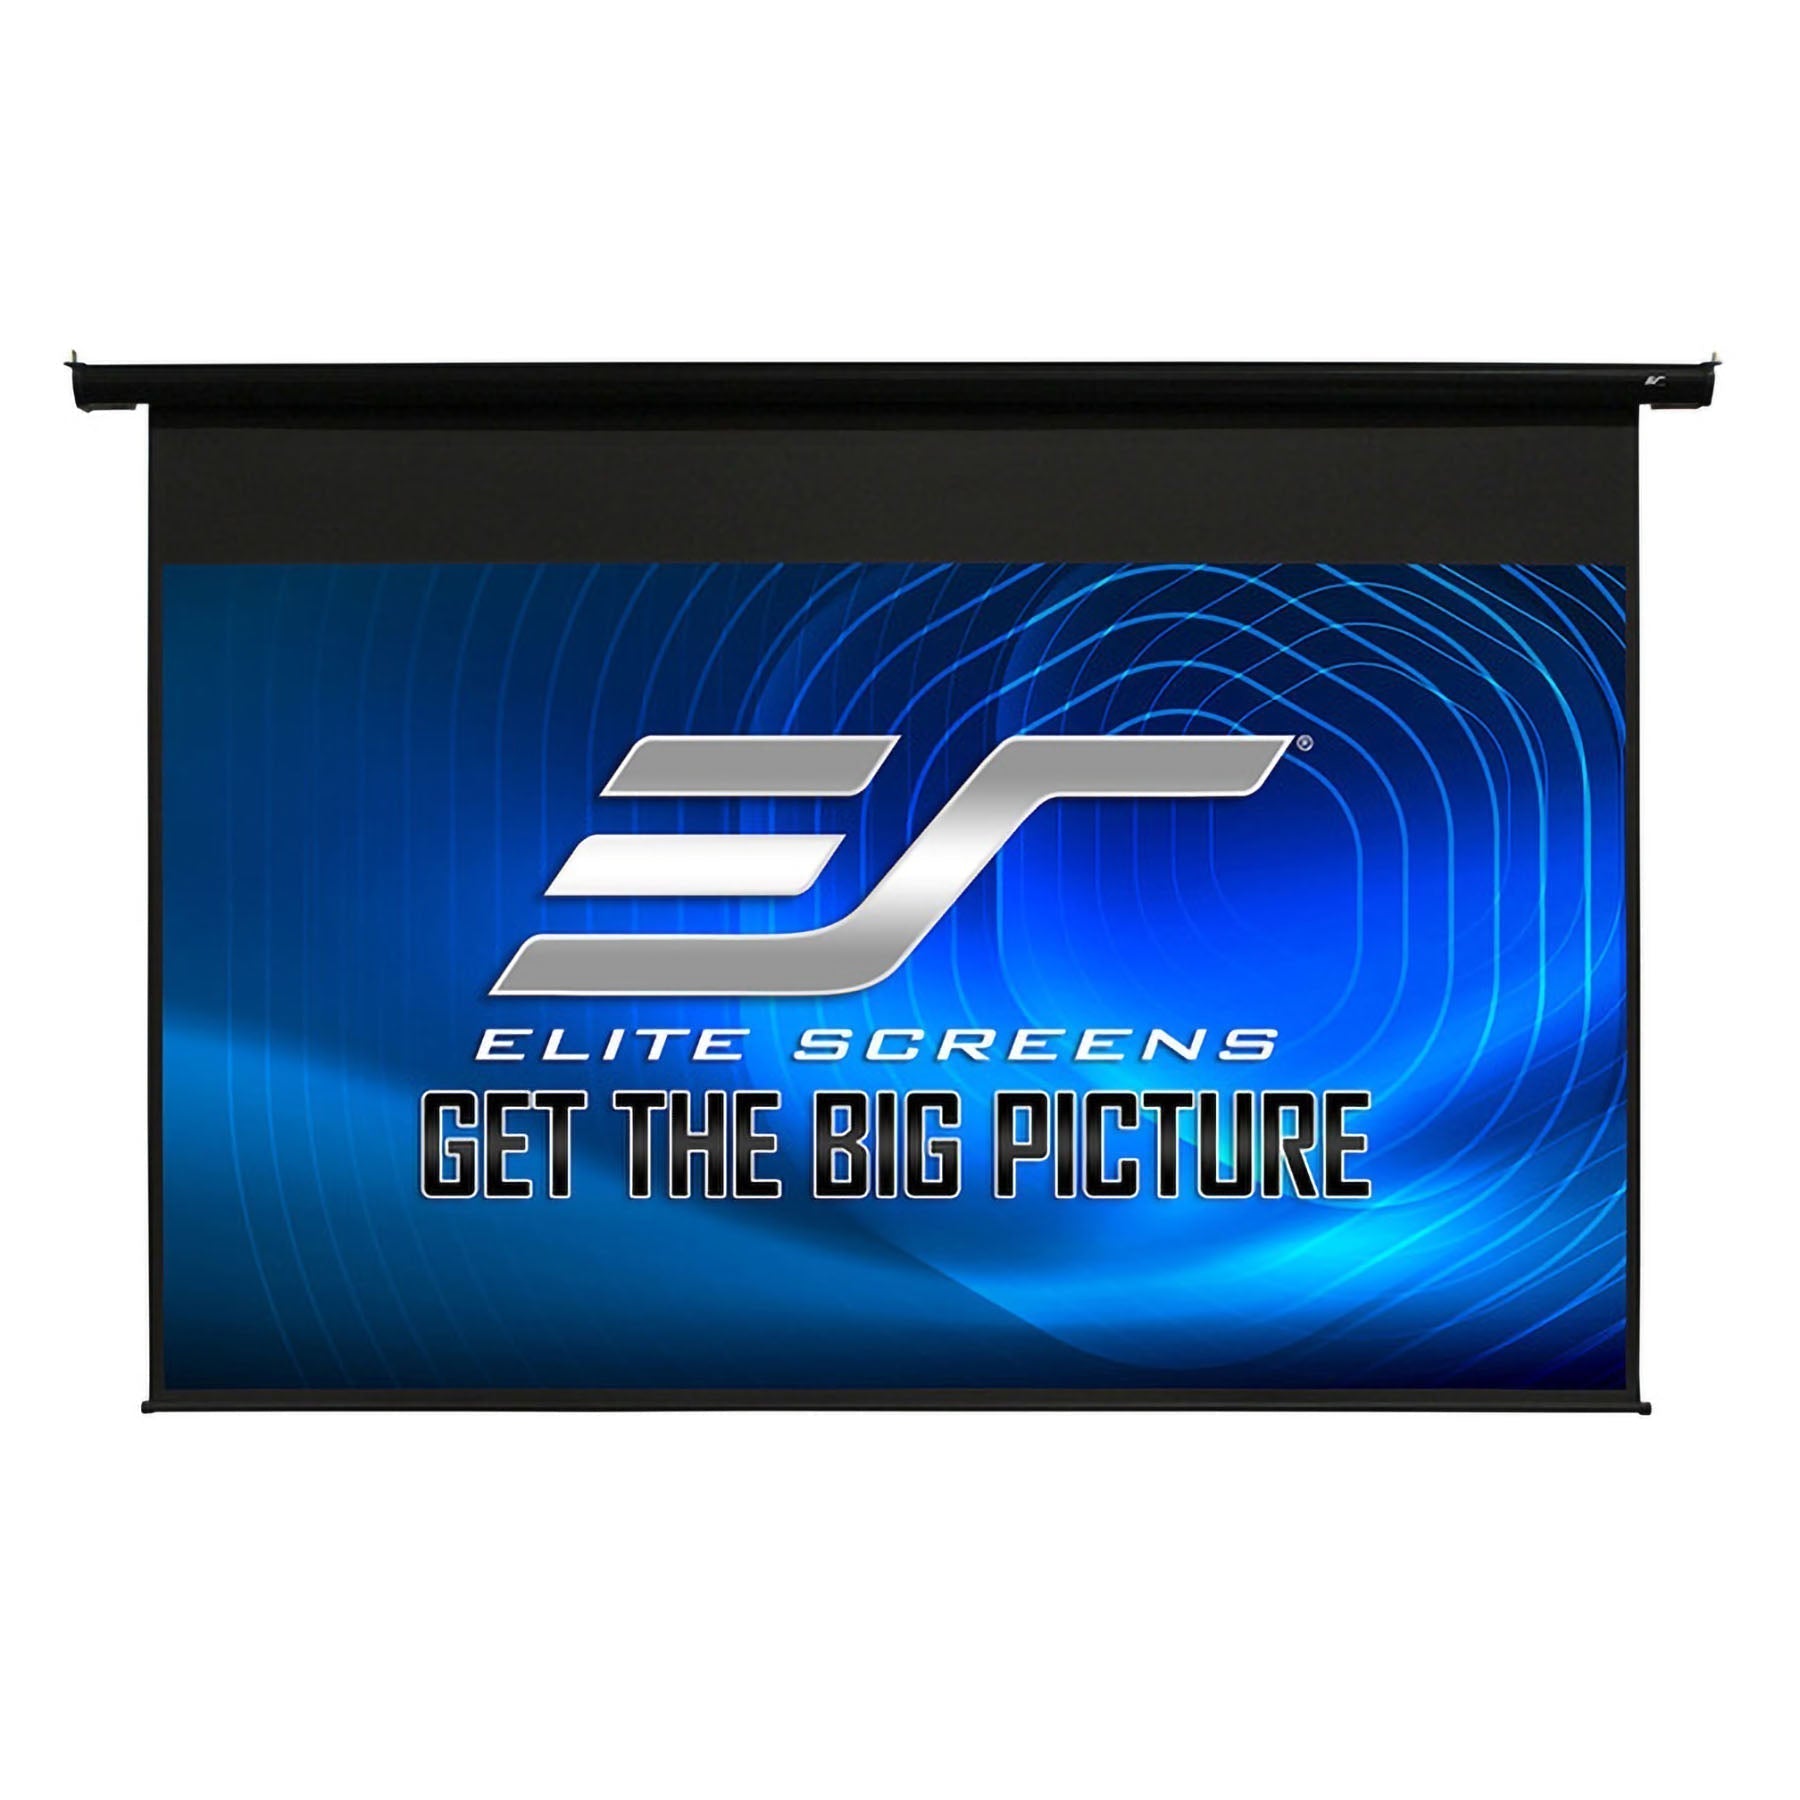 Elite Screens ELECTRIC84H Spectrum 16:9 84" Electric Screen - Black Casing